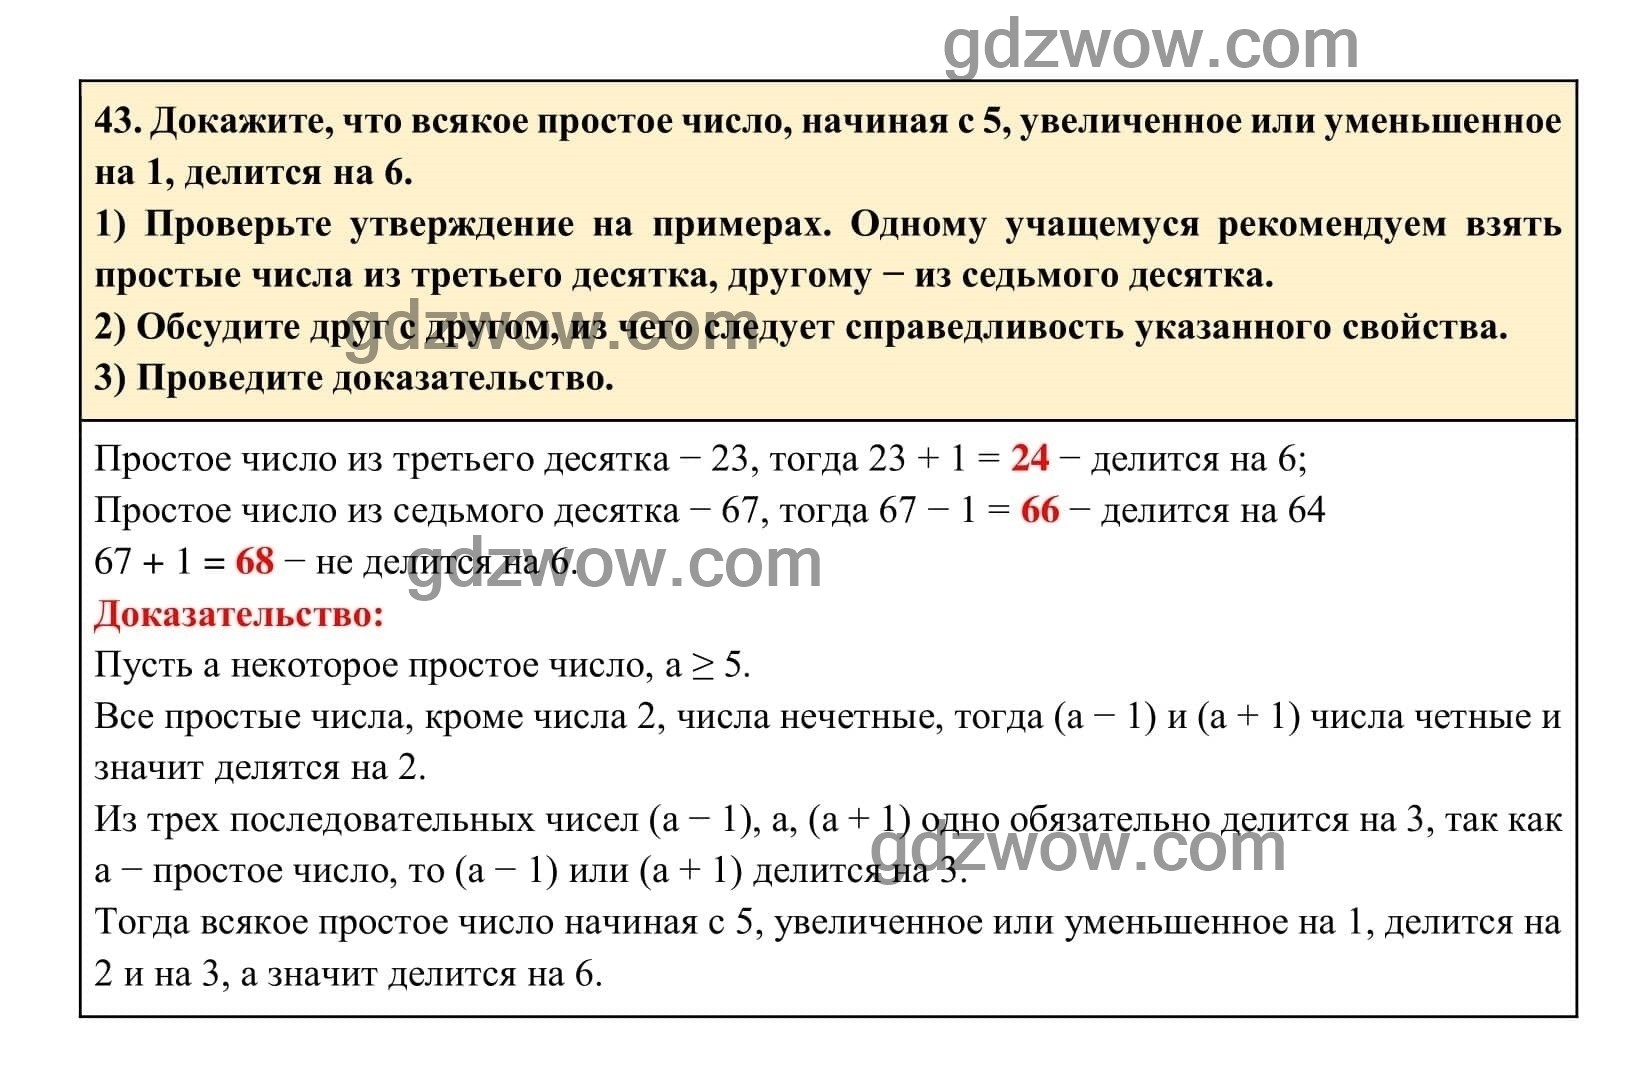 Упражнение 43 - ГДЗ по Алгебре 7 класс Учебник Макарычев (решебник) - GDZwow